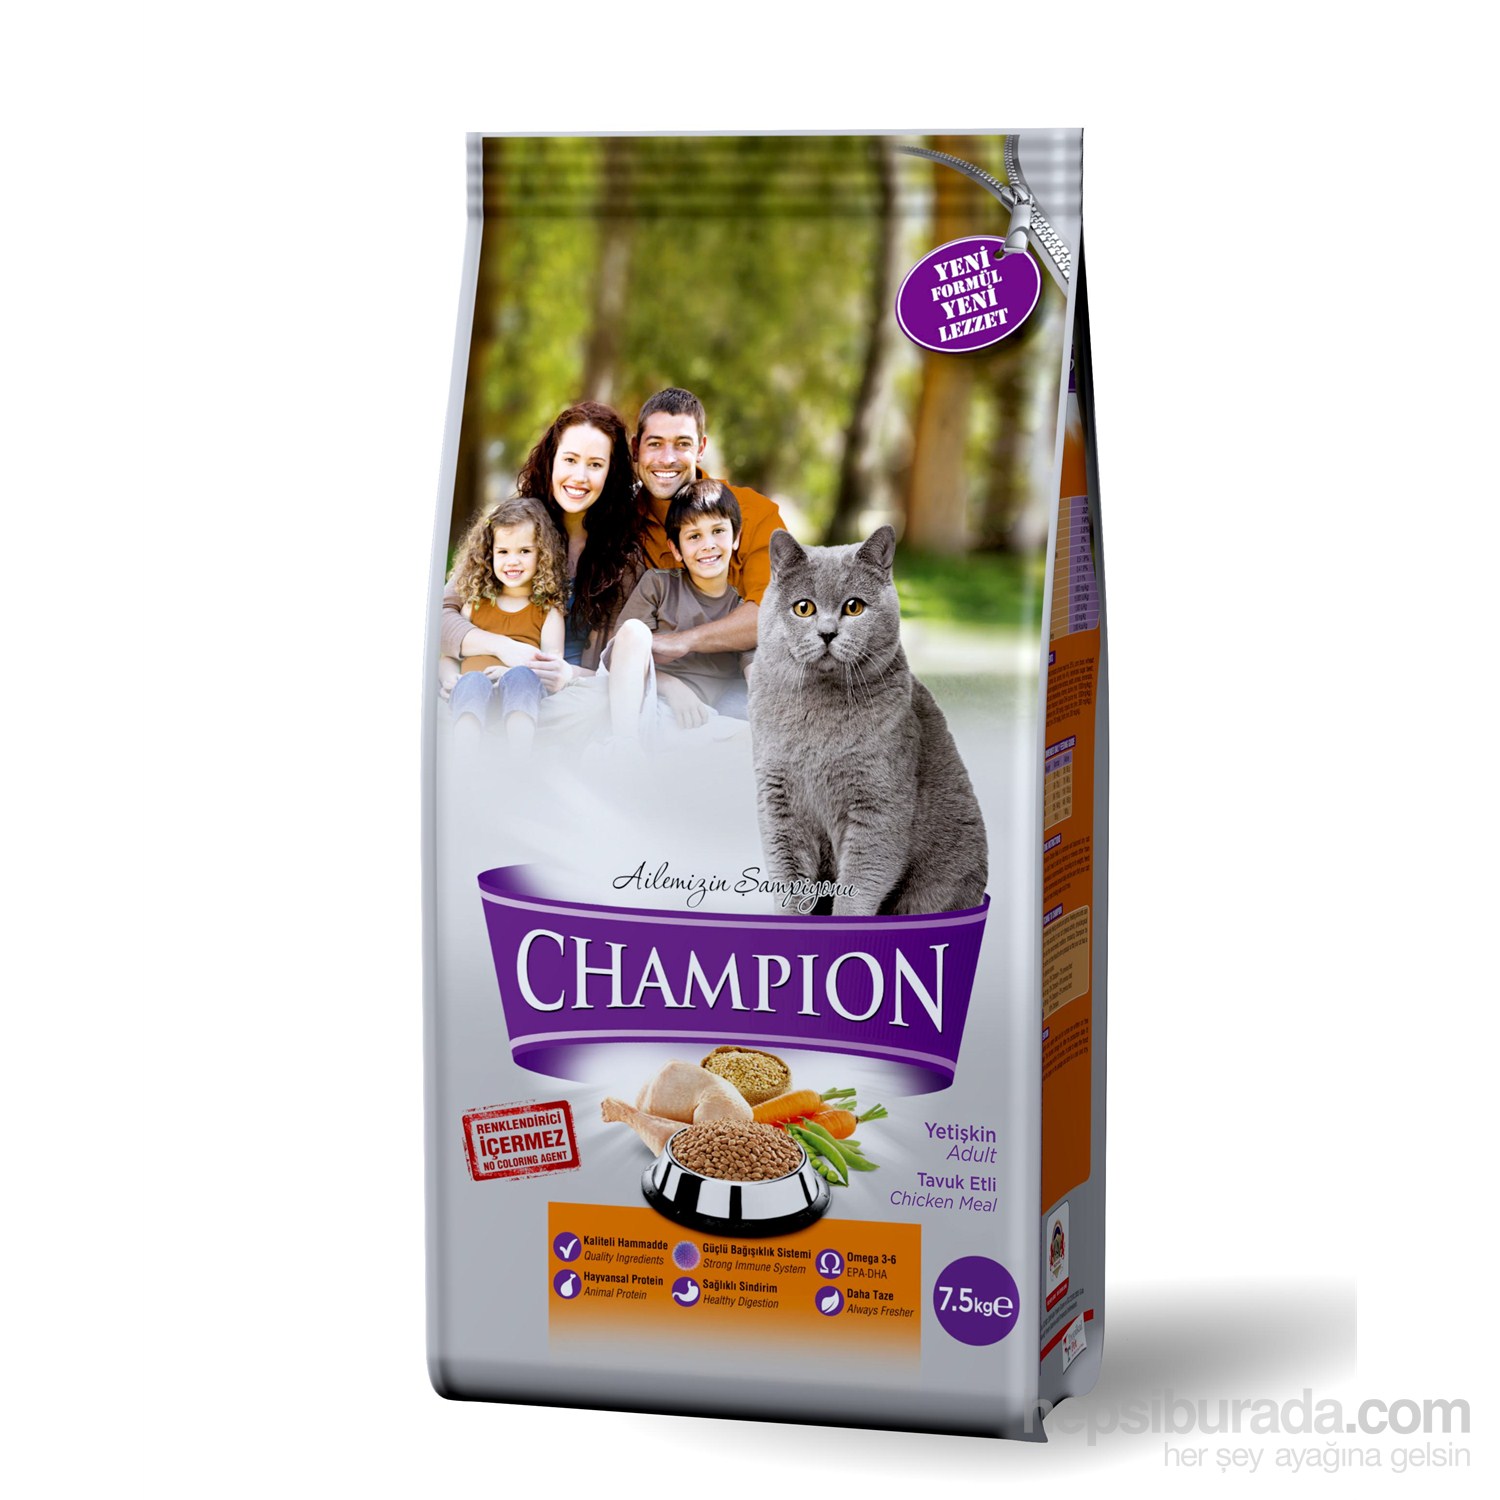 Champion Tavuk Etli Yetişkin Kedi Maması 7,5 Kg fd